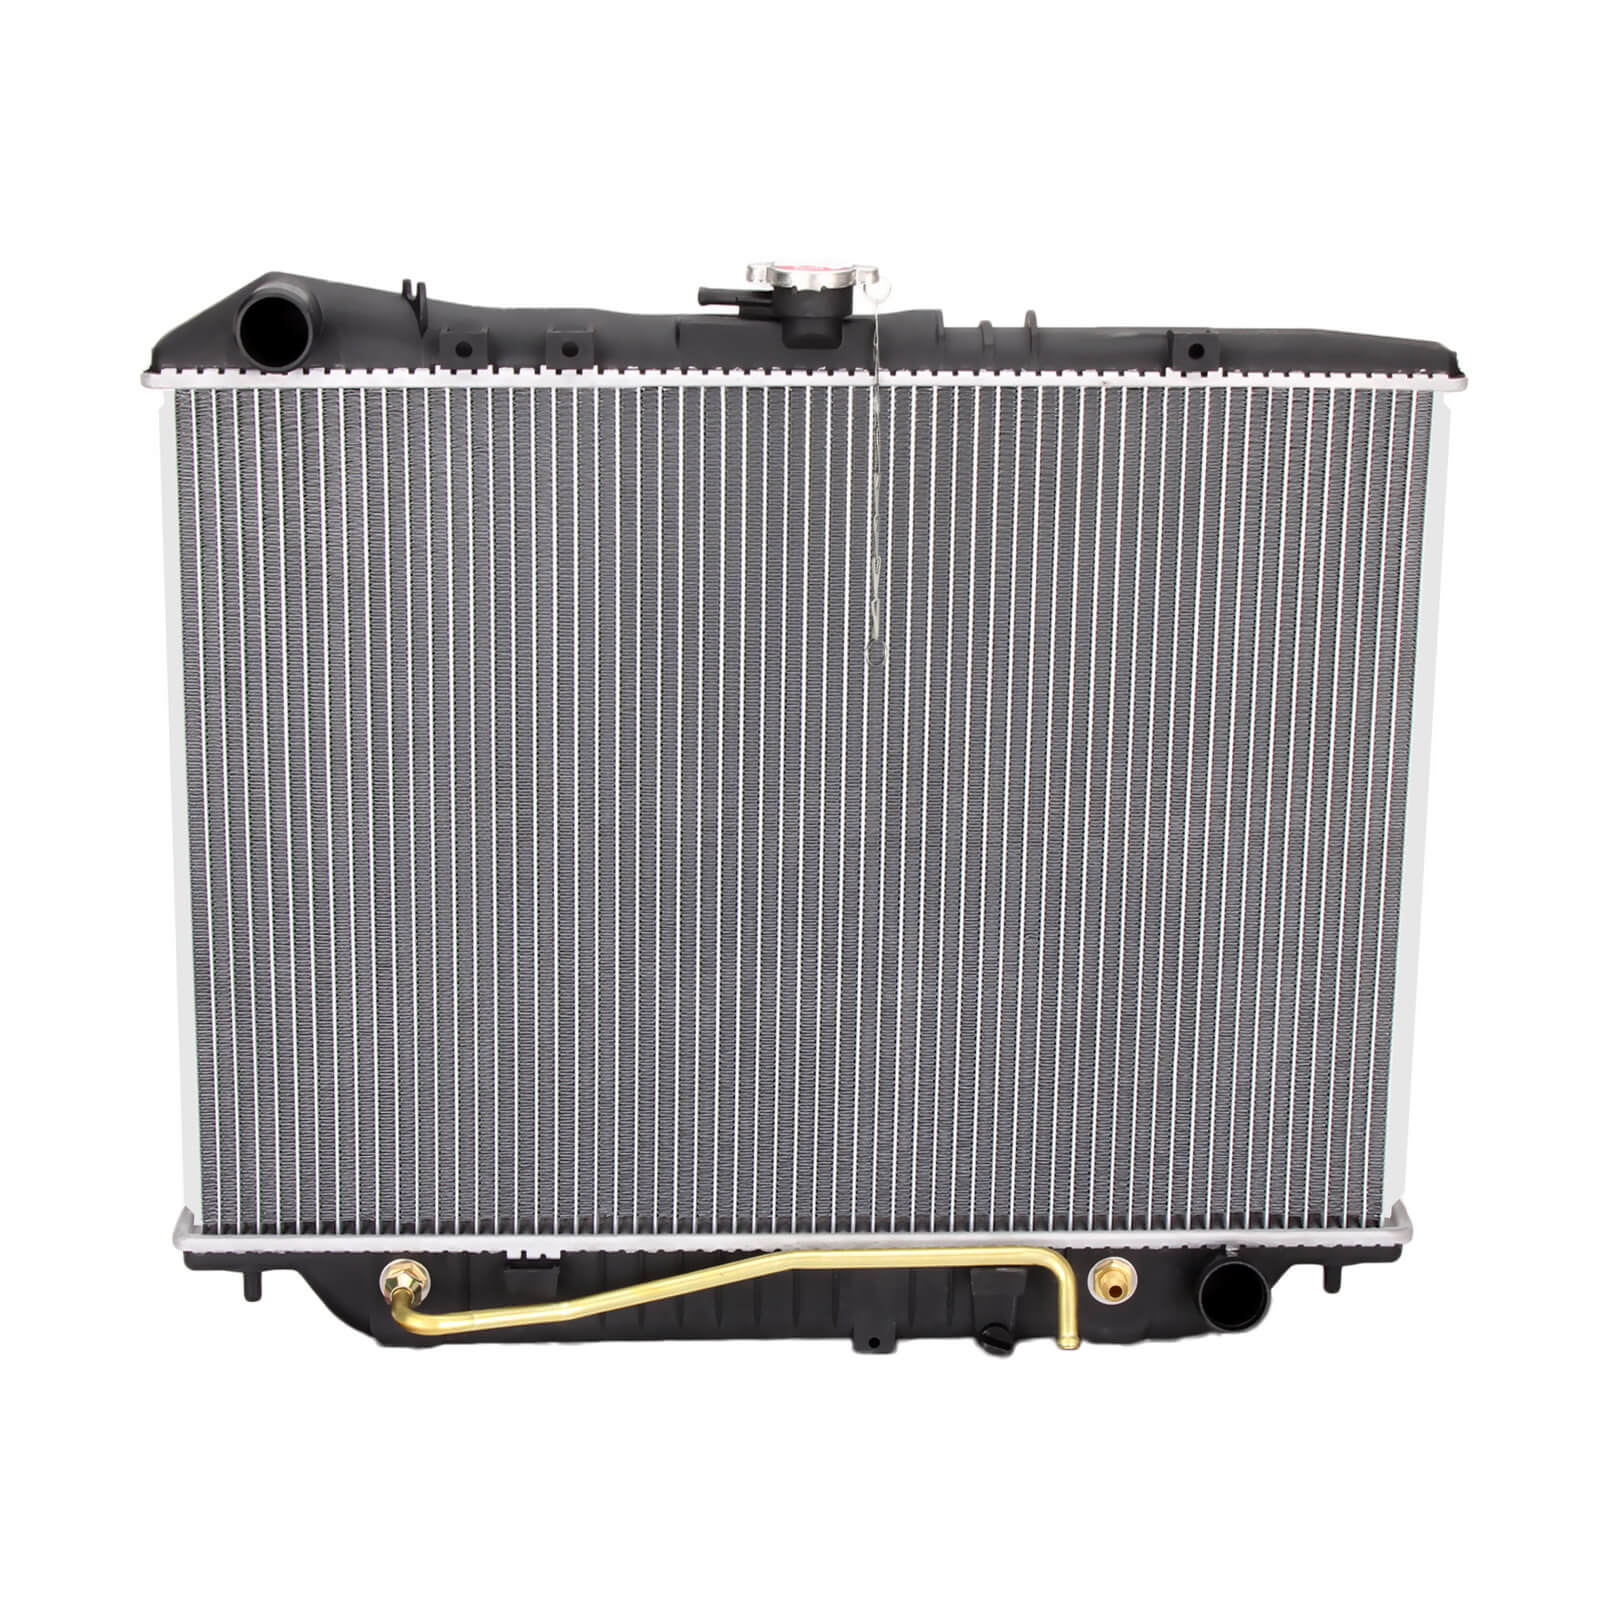 Aluminum Radiator for HONDA PASSPORT ISUZU RODEO VEHICROSS 8524759590 1571